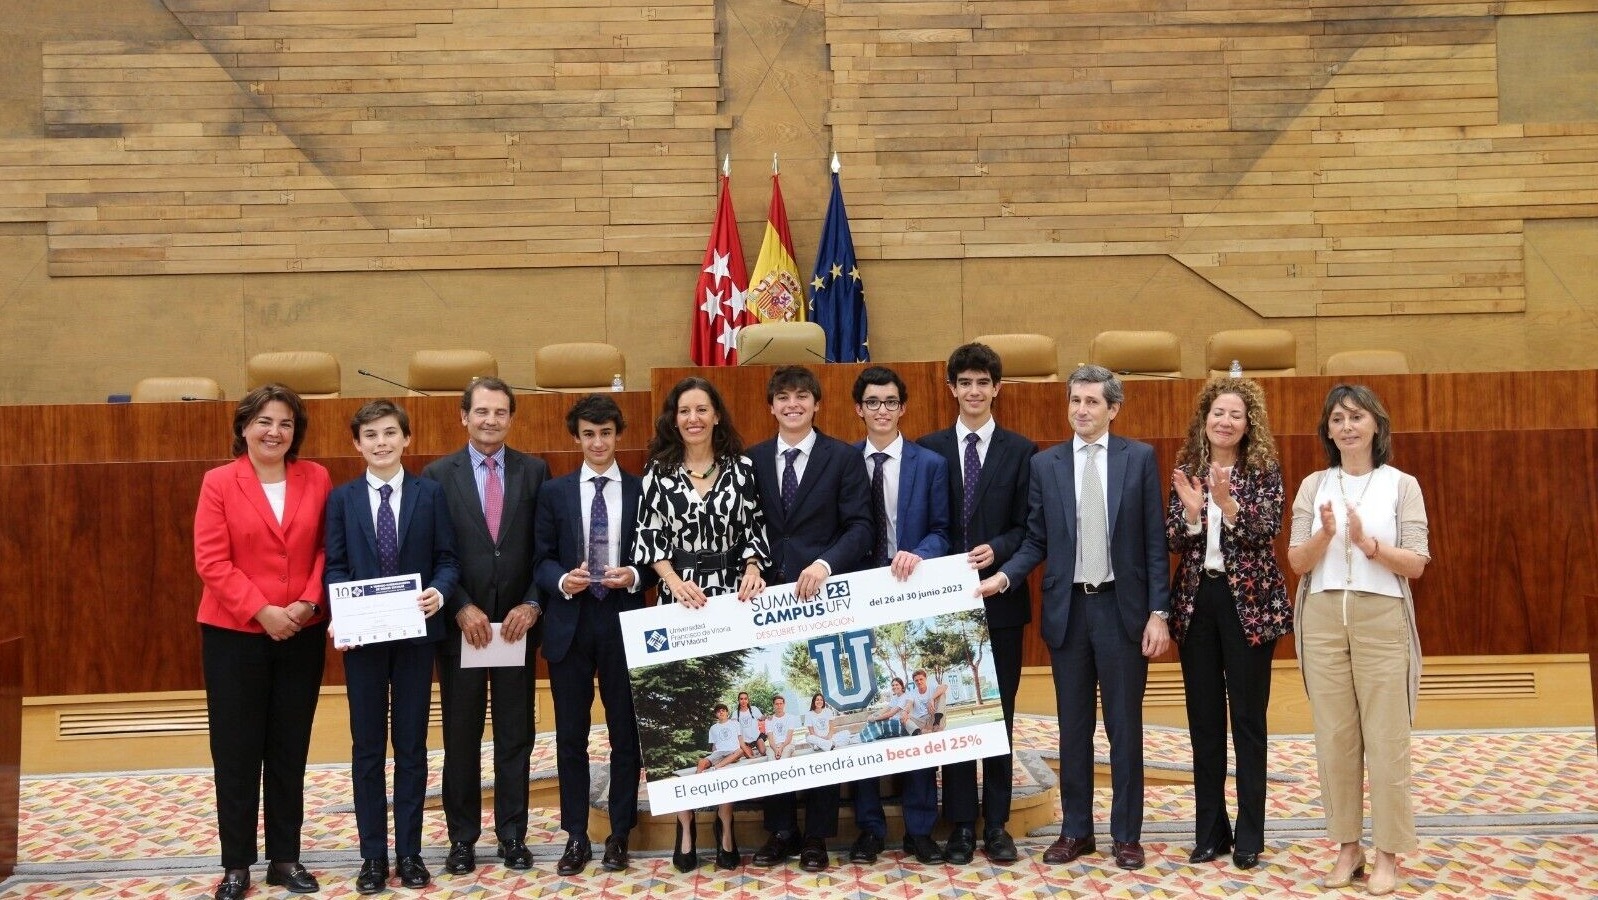 El Colegio Retamar de Pozuelo se corona campeón del XIV Torneo Escolar de Debate de la Comunidad de Madrid